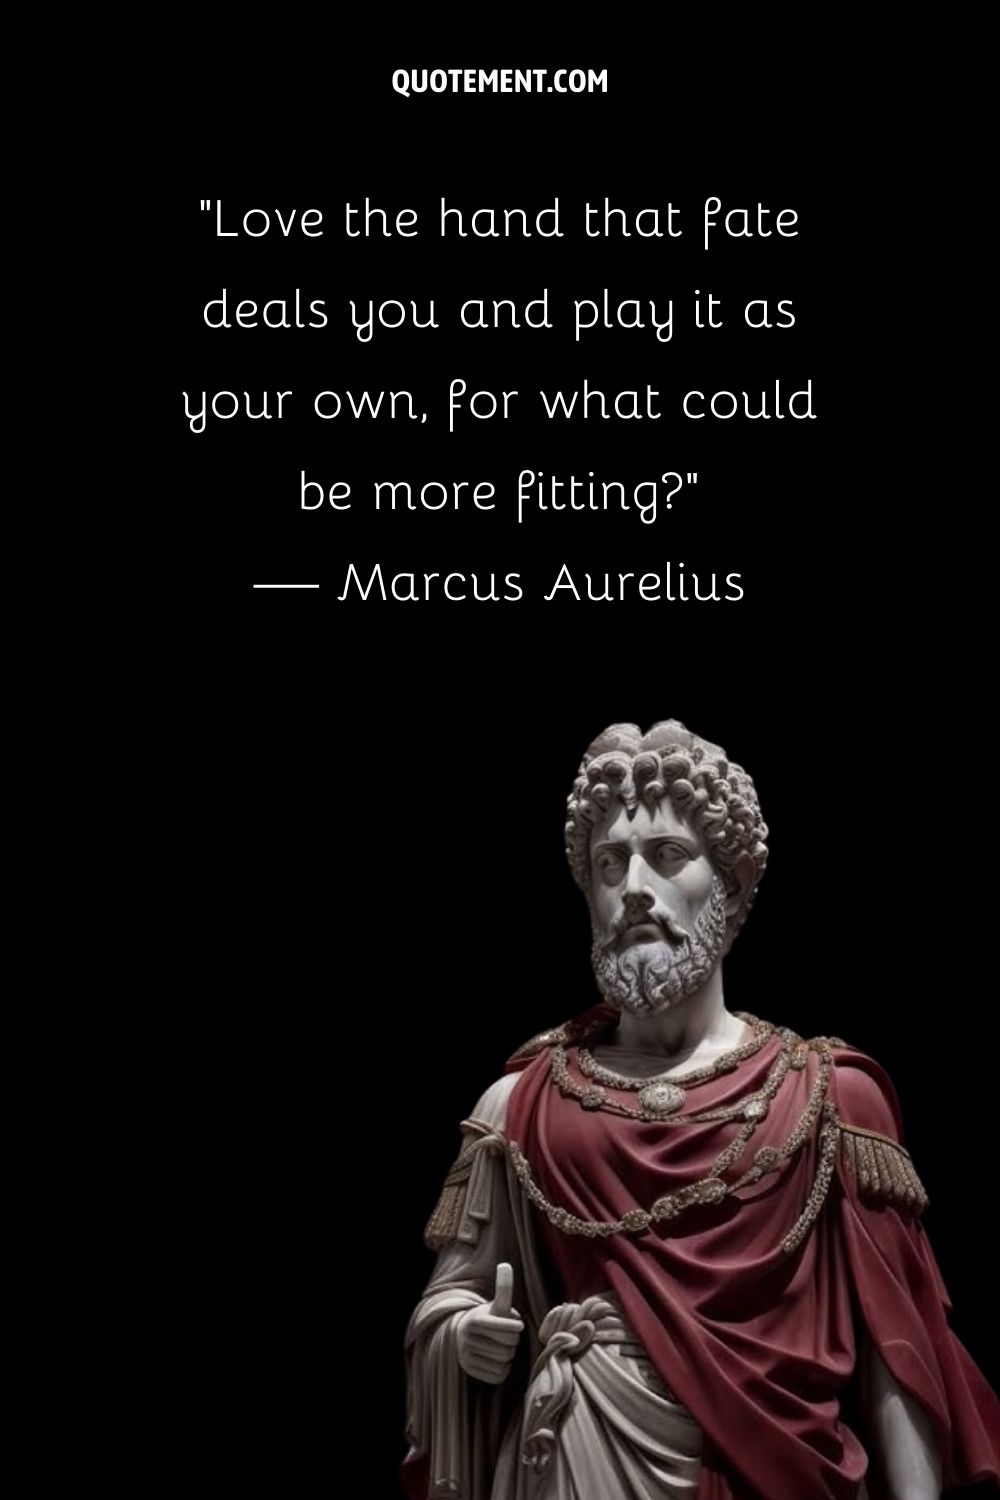 La estatua de Marco Aurelio encarna la sabiduría estoica.